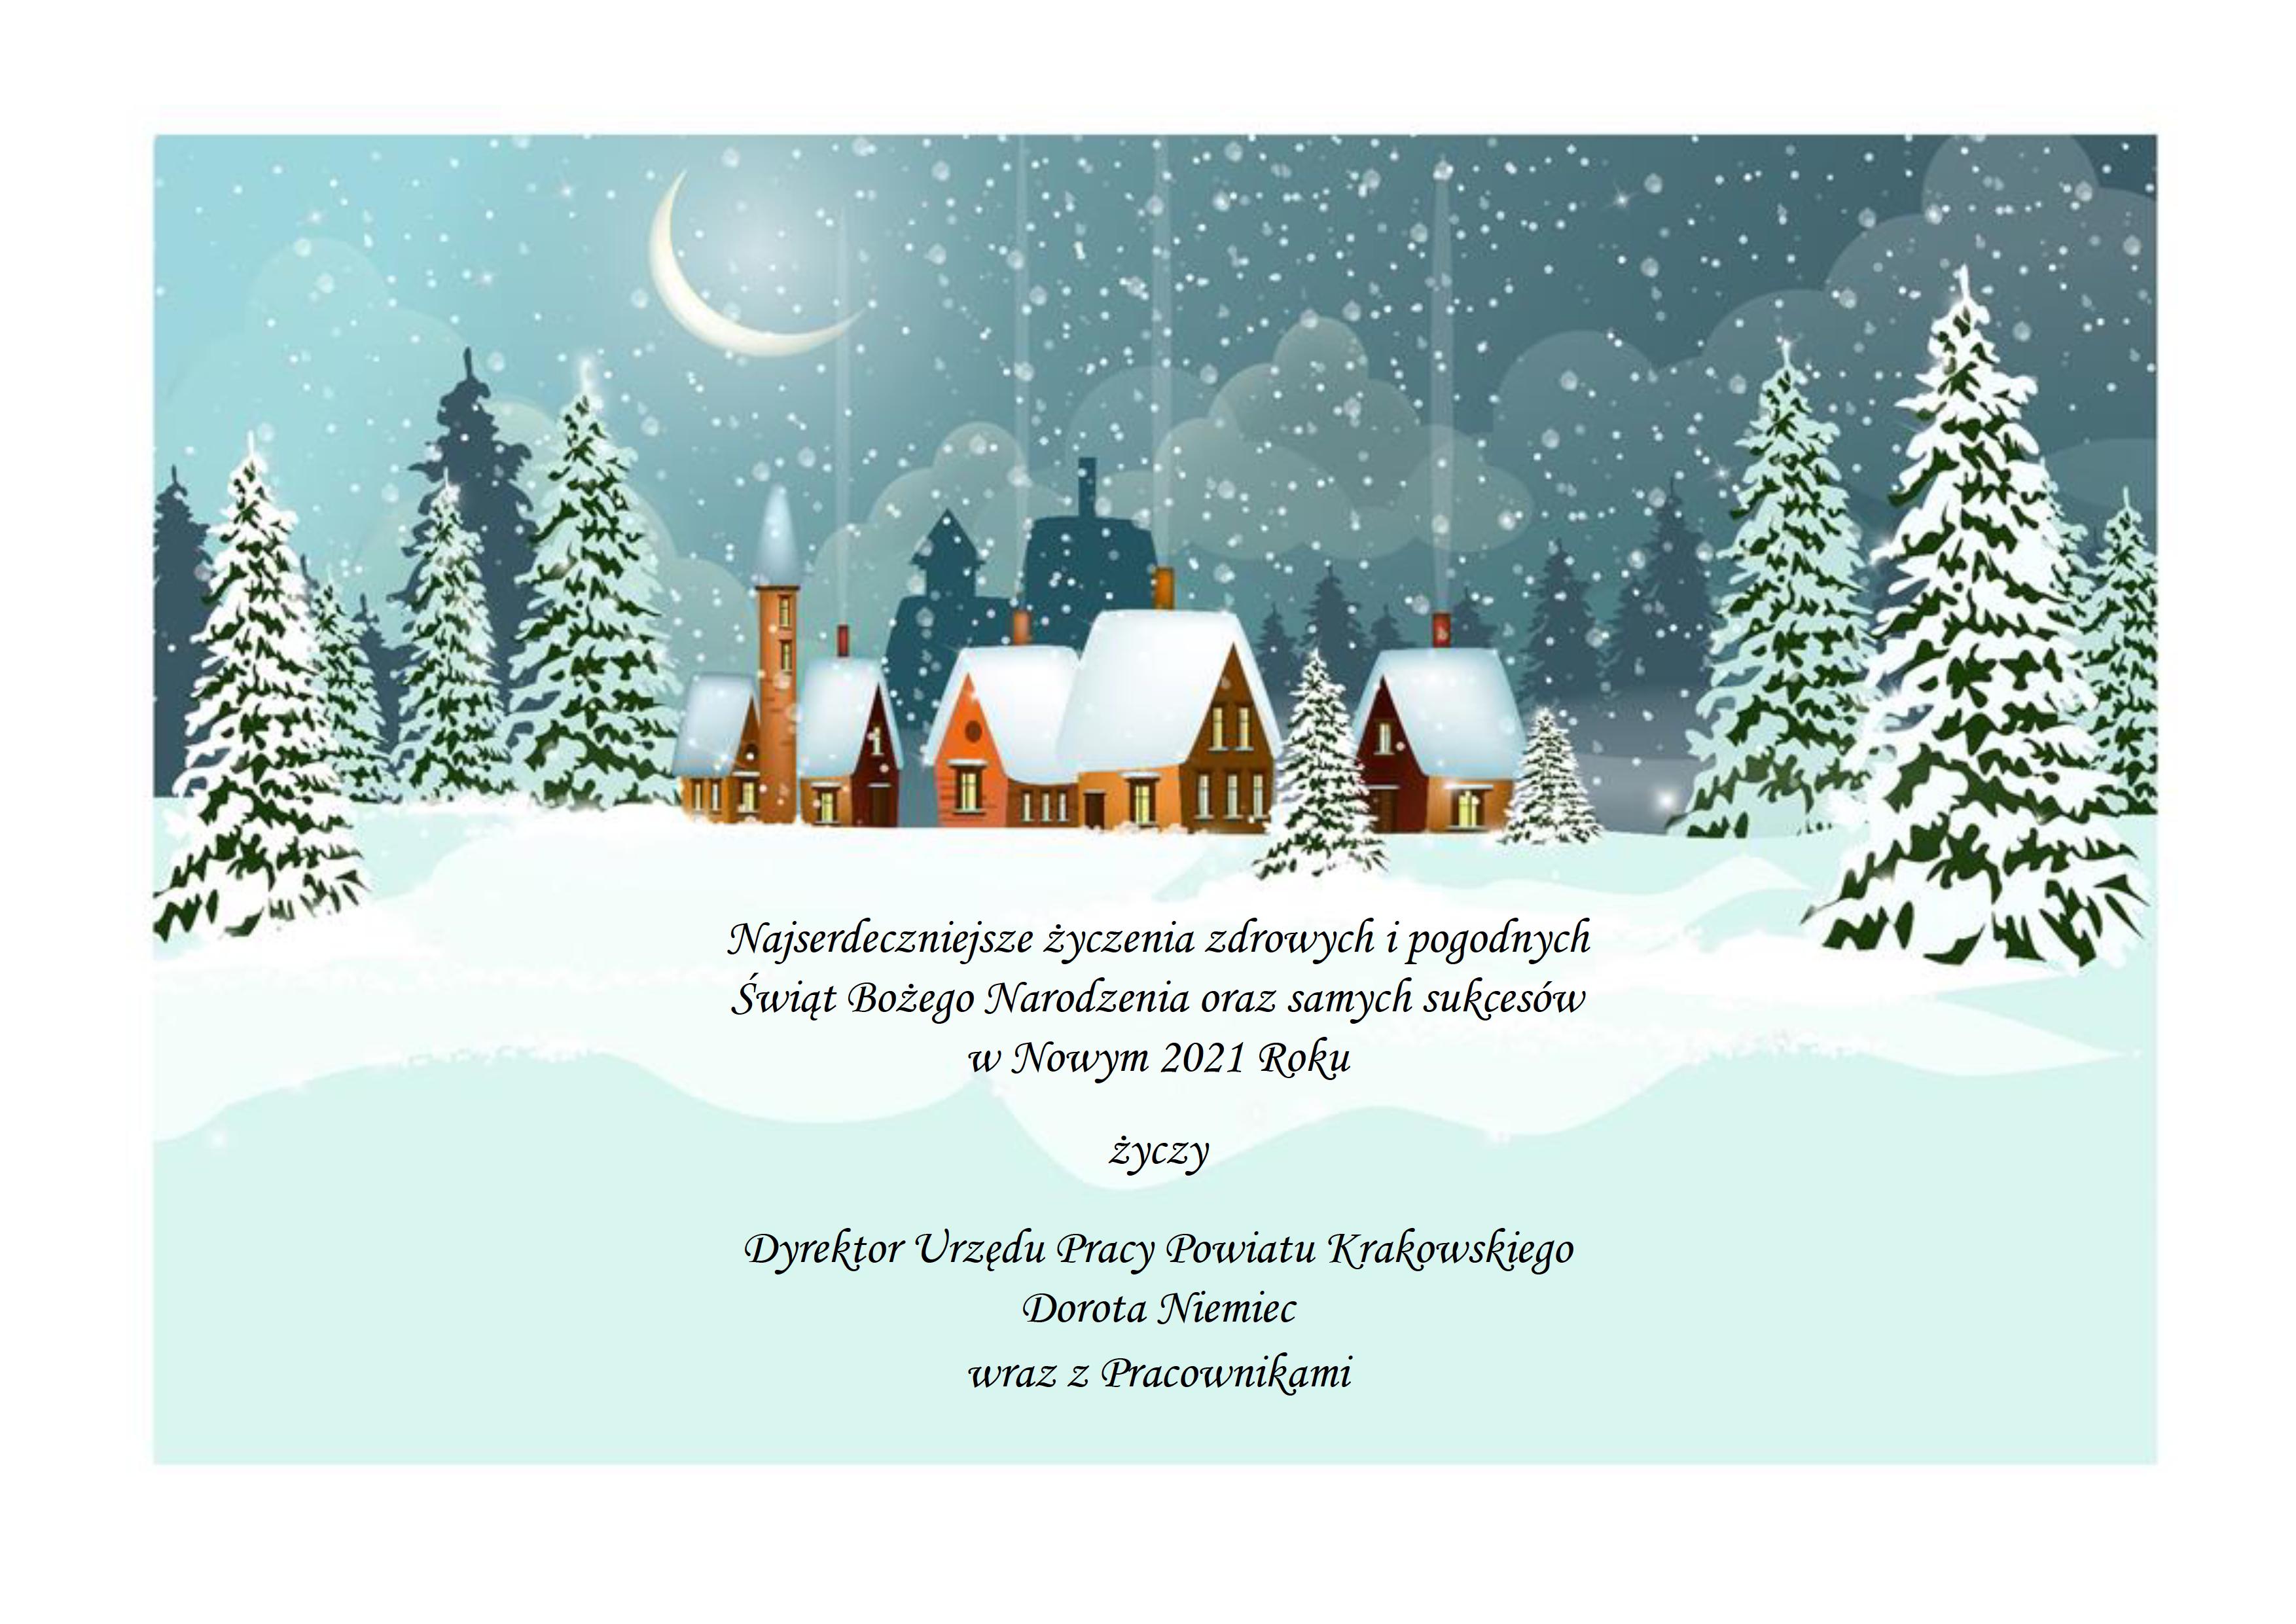 Najserdeczniejsze życzenia zdrowych i pogodnych Świąt Bożego Narodzenia oraz samych sukcesów w Nowym 2021 Roku życzy Dyrektor Urzędu Pracy Powiatu Krakowskiego Dorota Niemiec wraz z Pracownikami